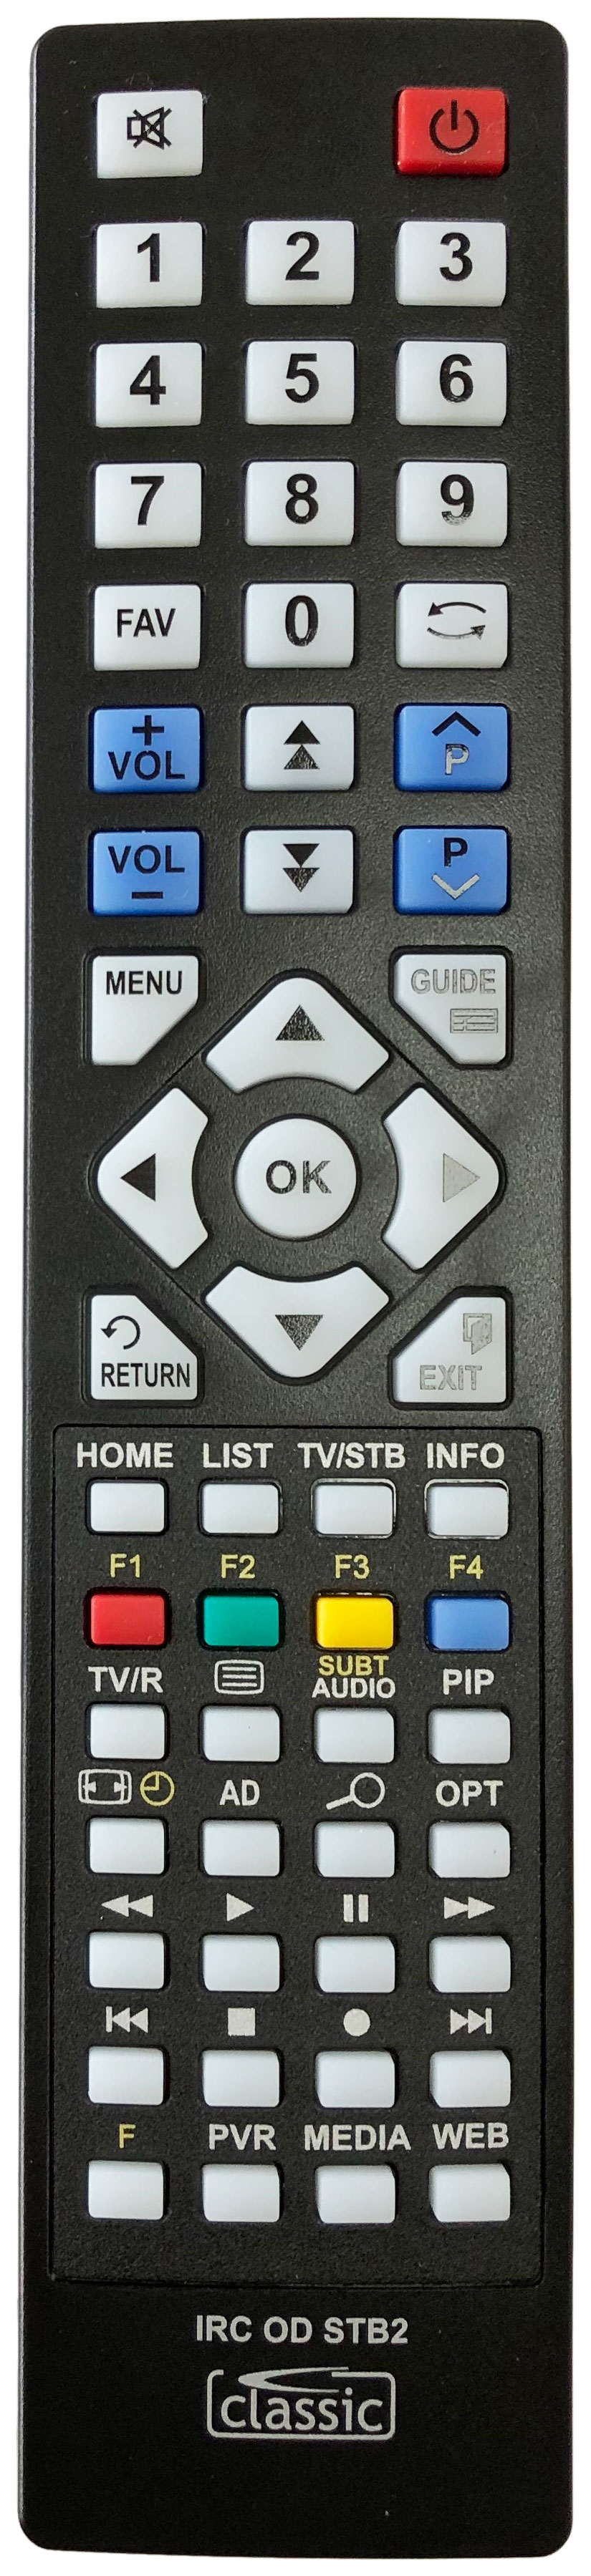 MANHATTAN PLAZA HDT-700 Remote Control